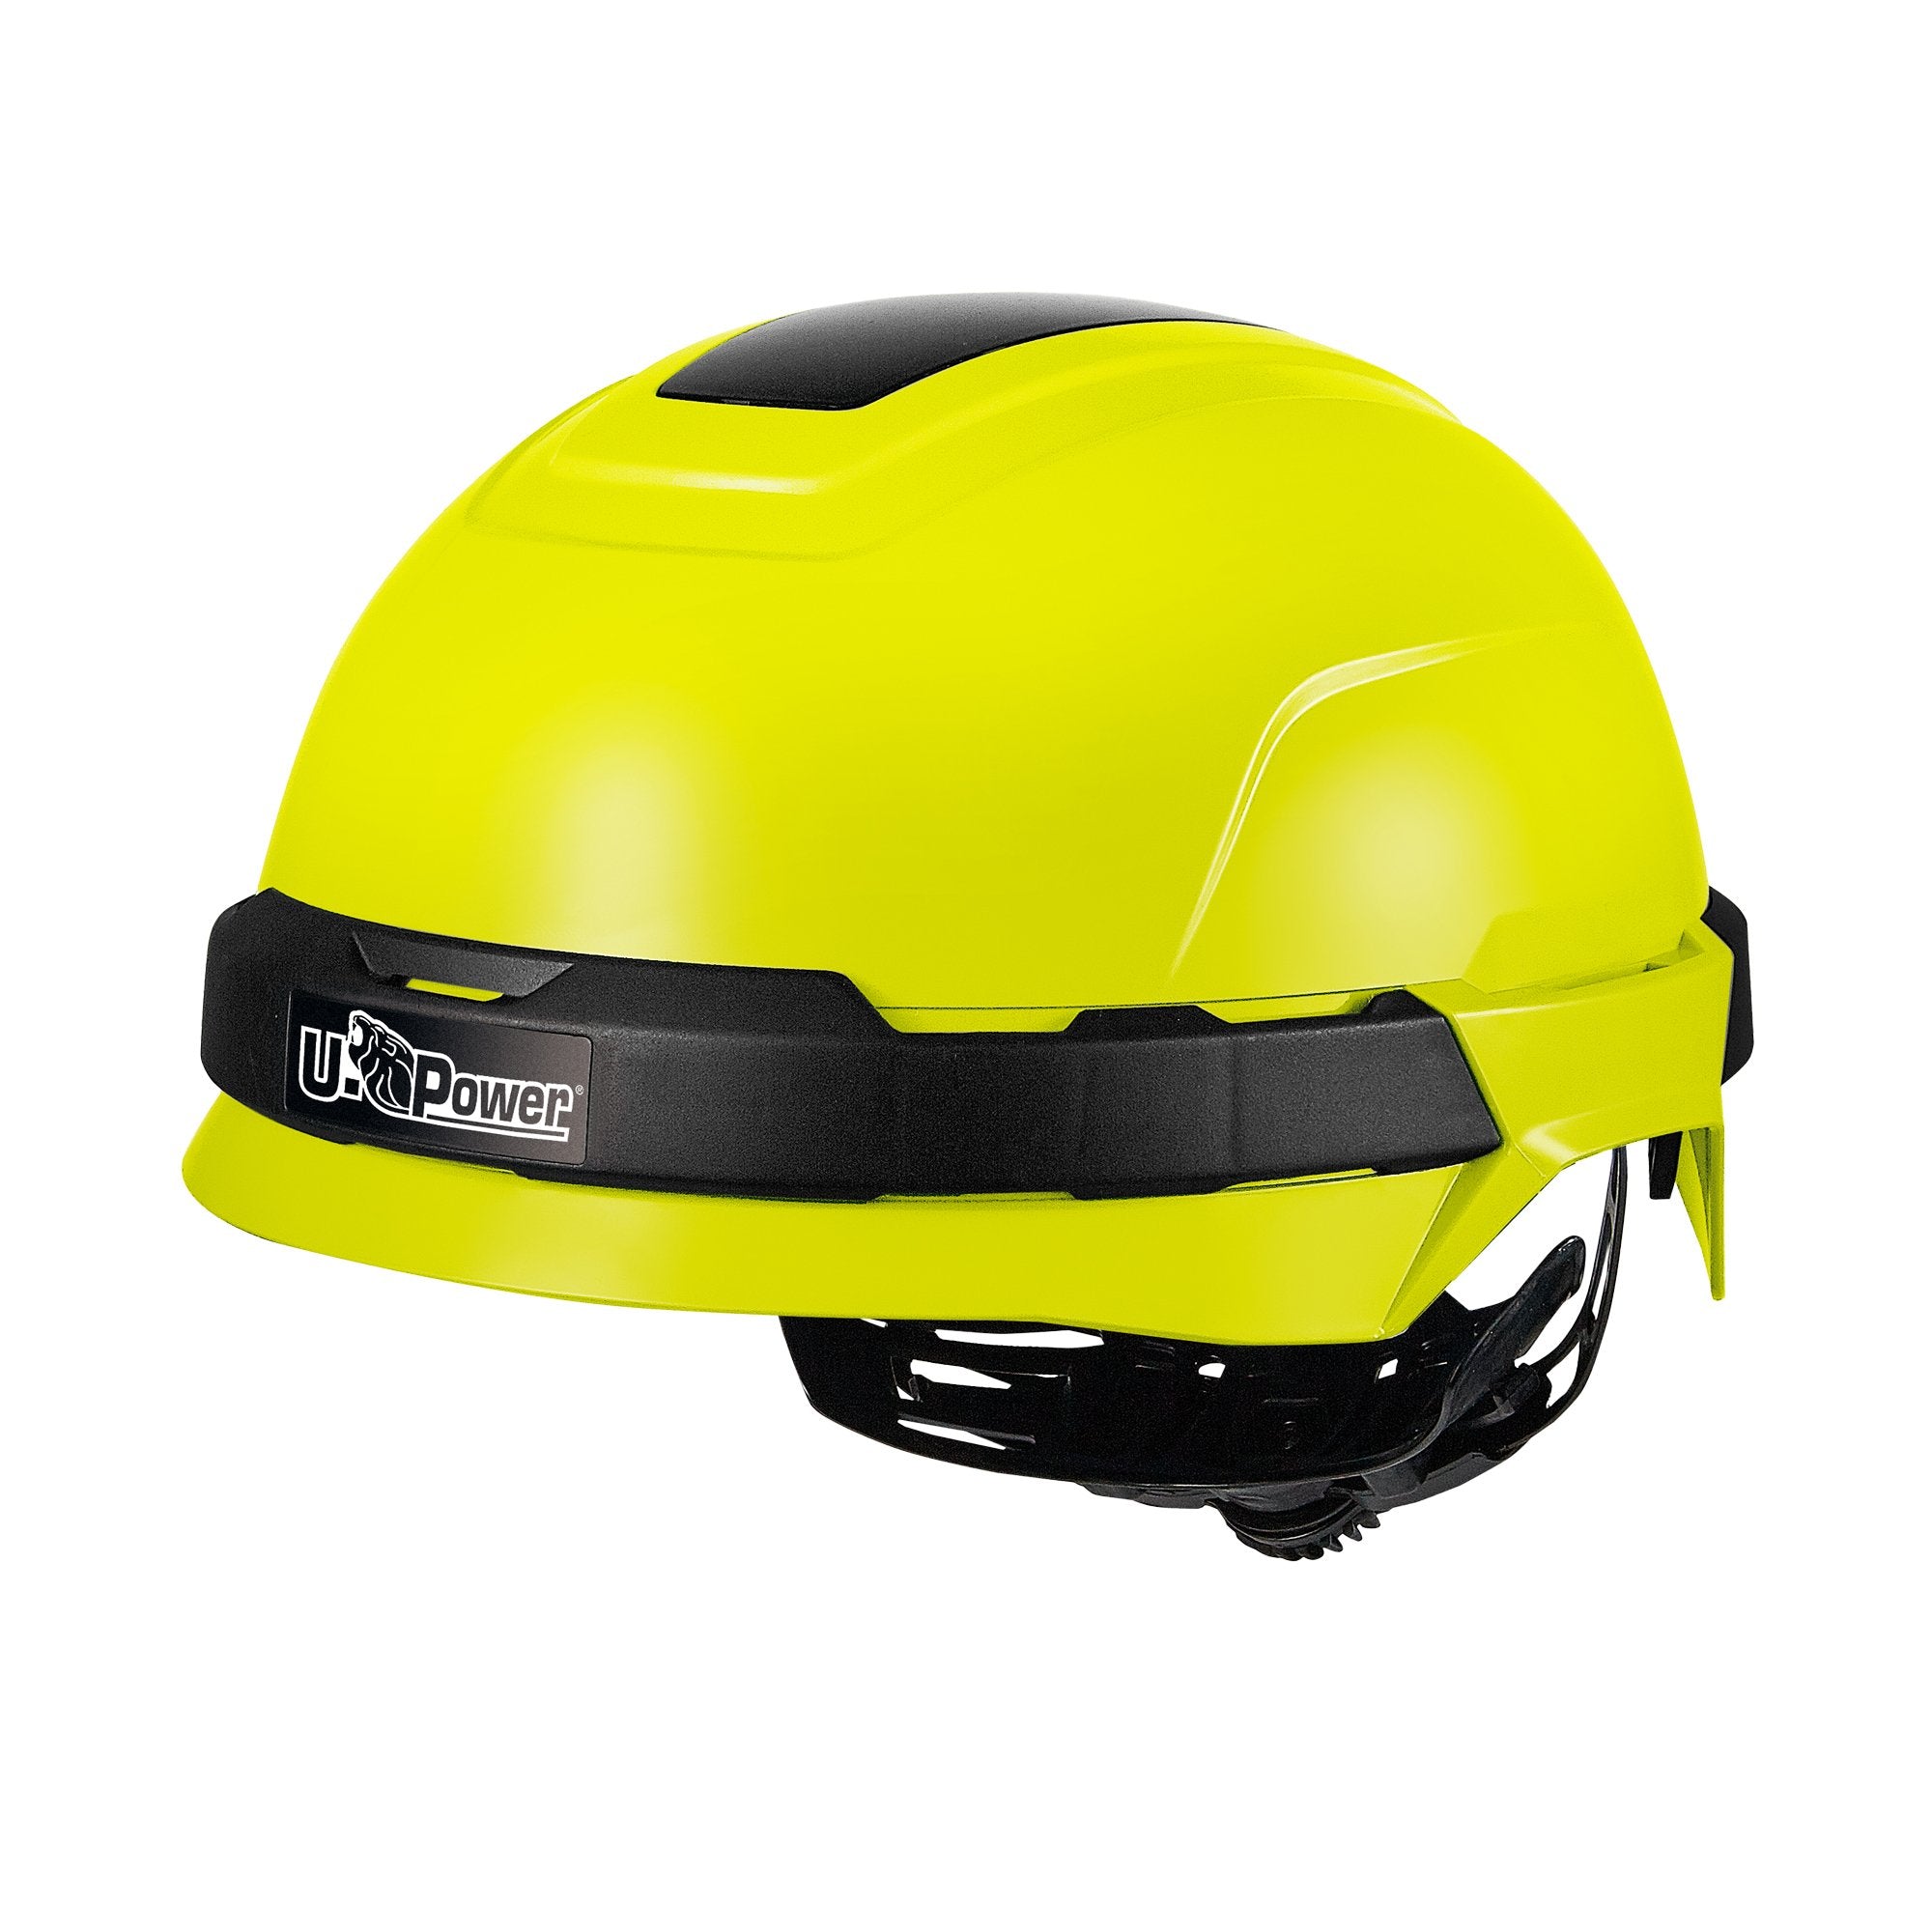 u-power-casco-protettivo-antares-giallo-fluo-regolabile